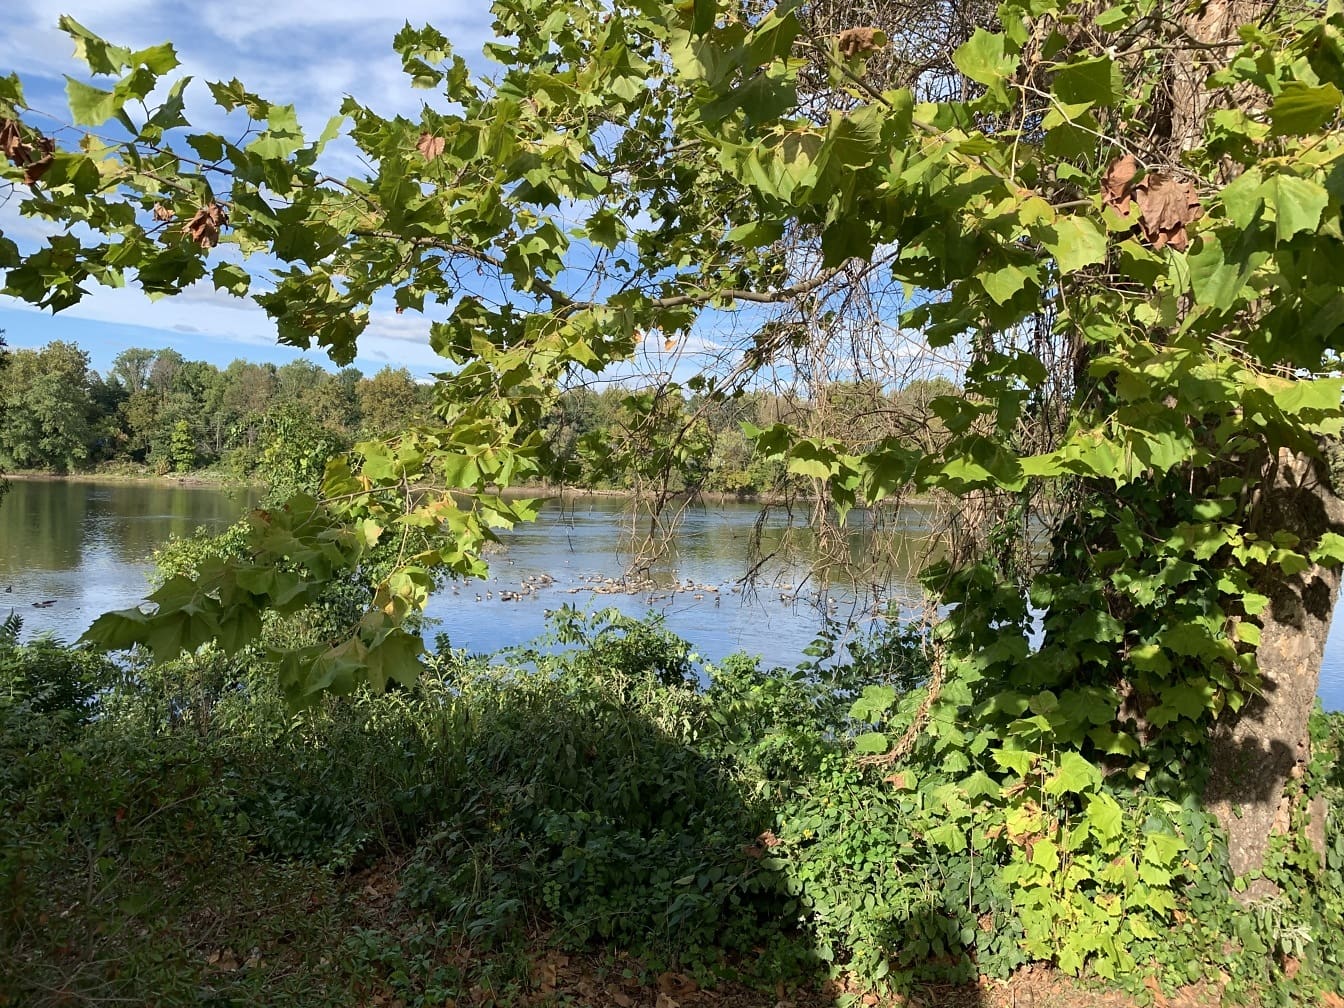 Uitzicht op de rivier Delaware vanaf de oever van de rivier in Langhorne, Pennsylvania met boom op de voorgrond die de opname omlijst